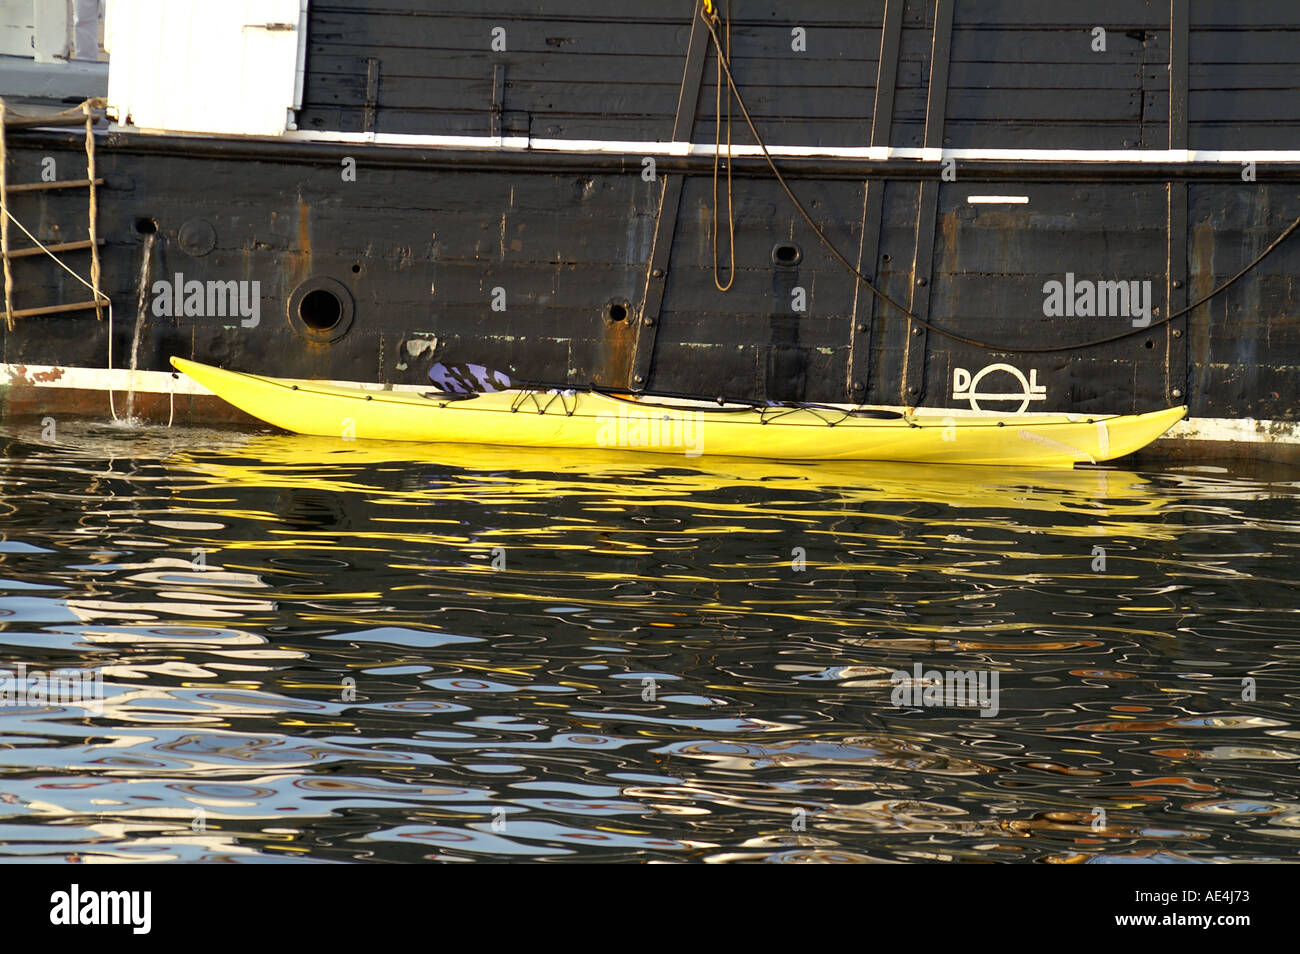 small kanu on big boat Stock Photo